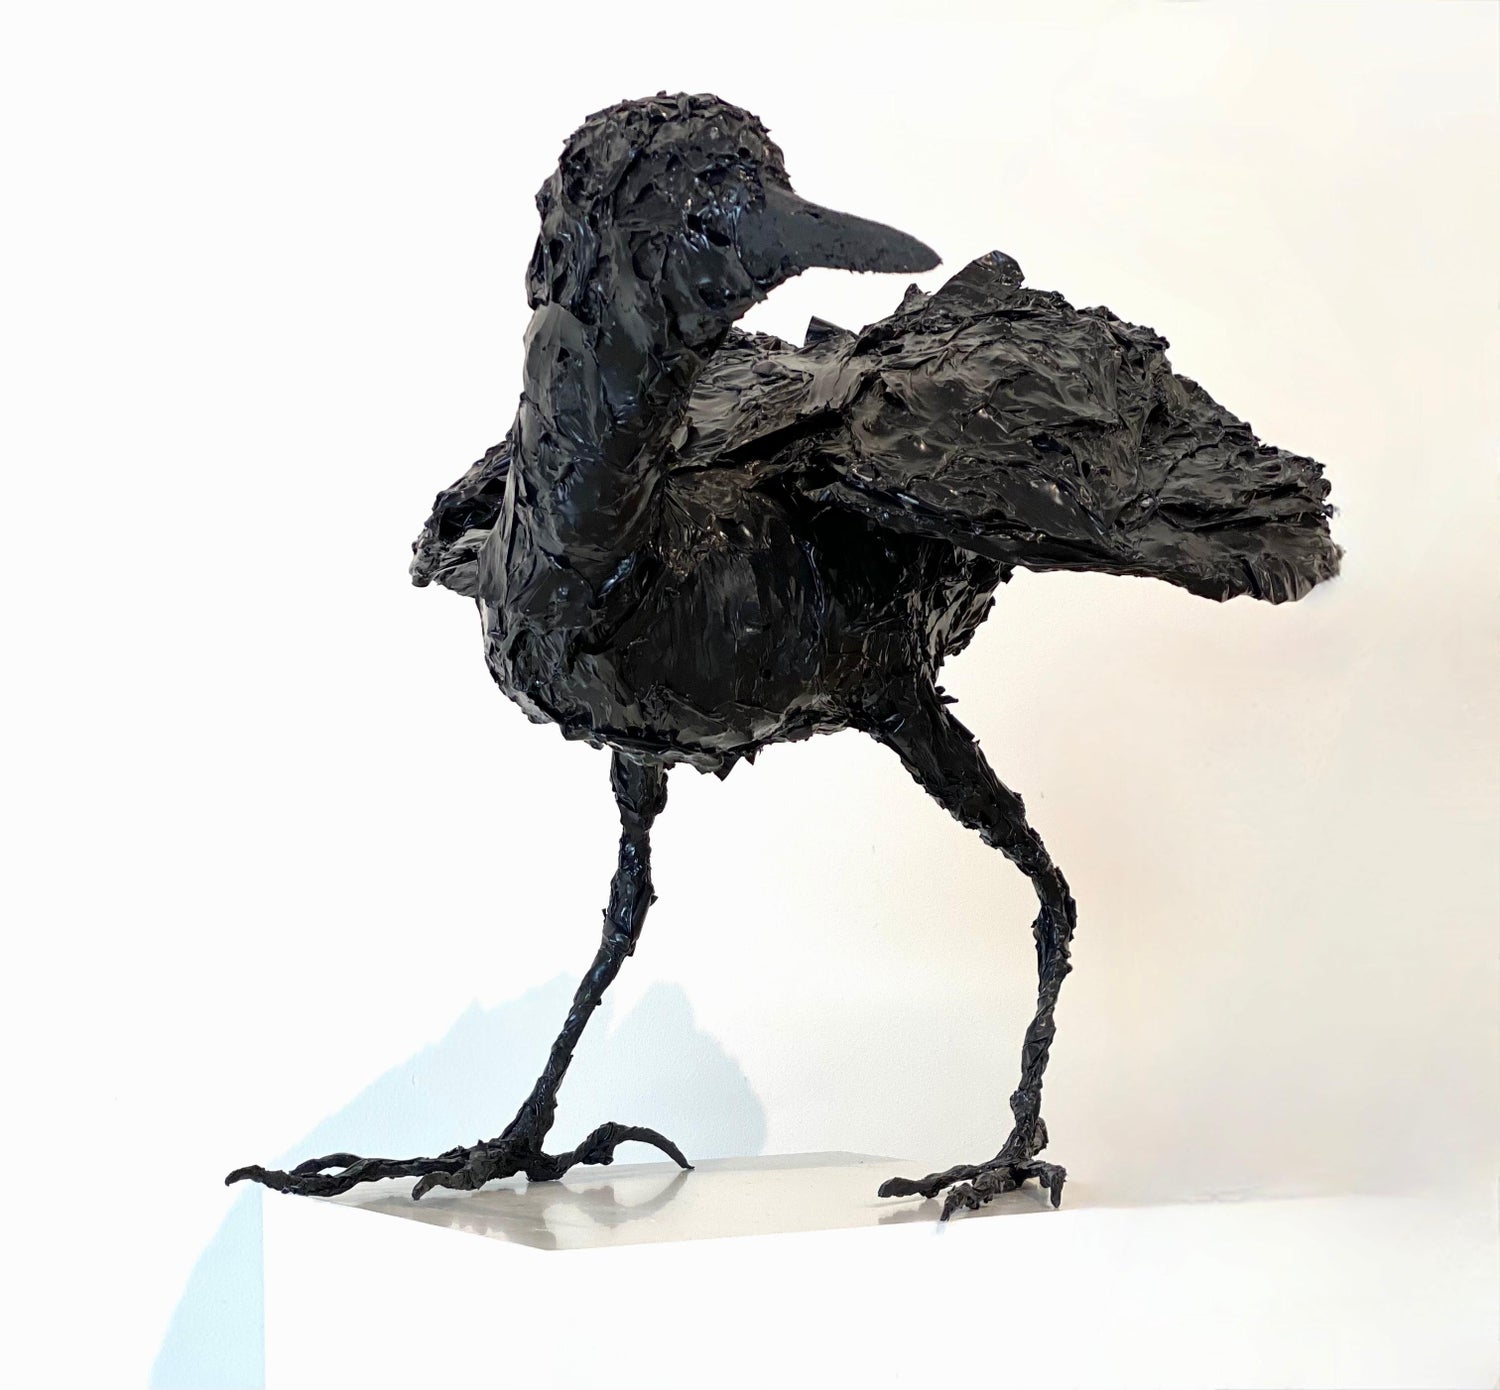 Original Handmade Crow Wire Sculpture, Wire Art, Wire Sculpture